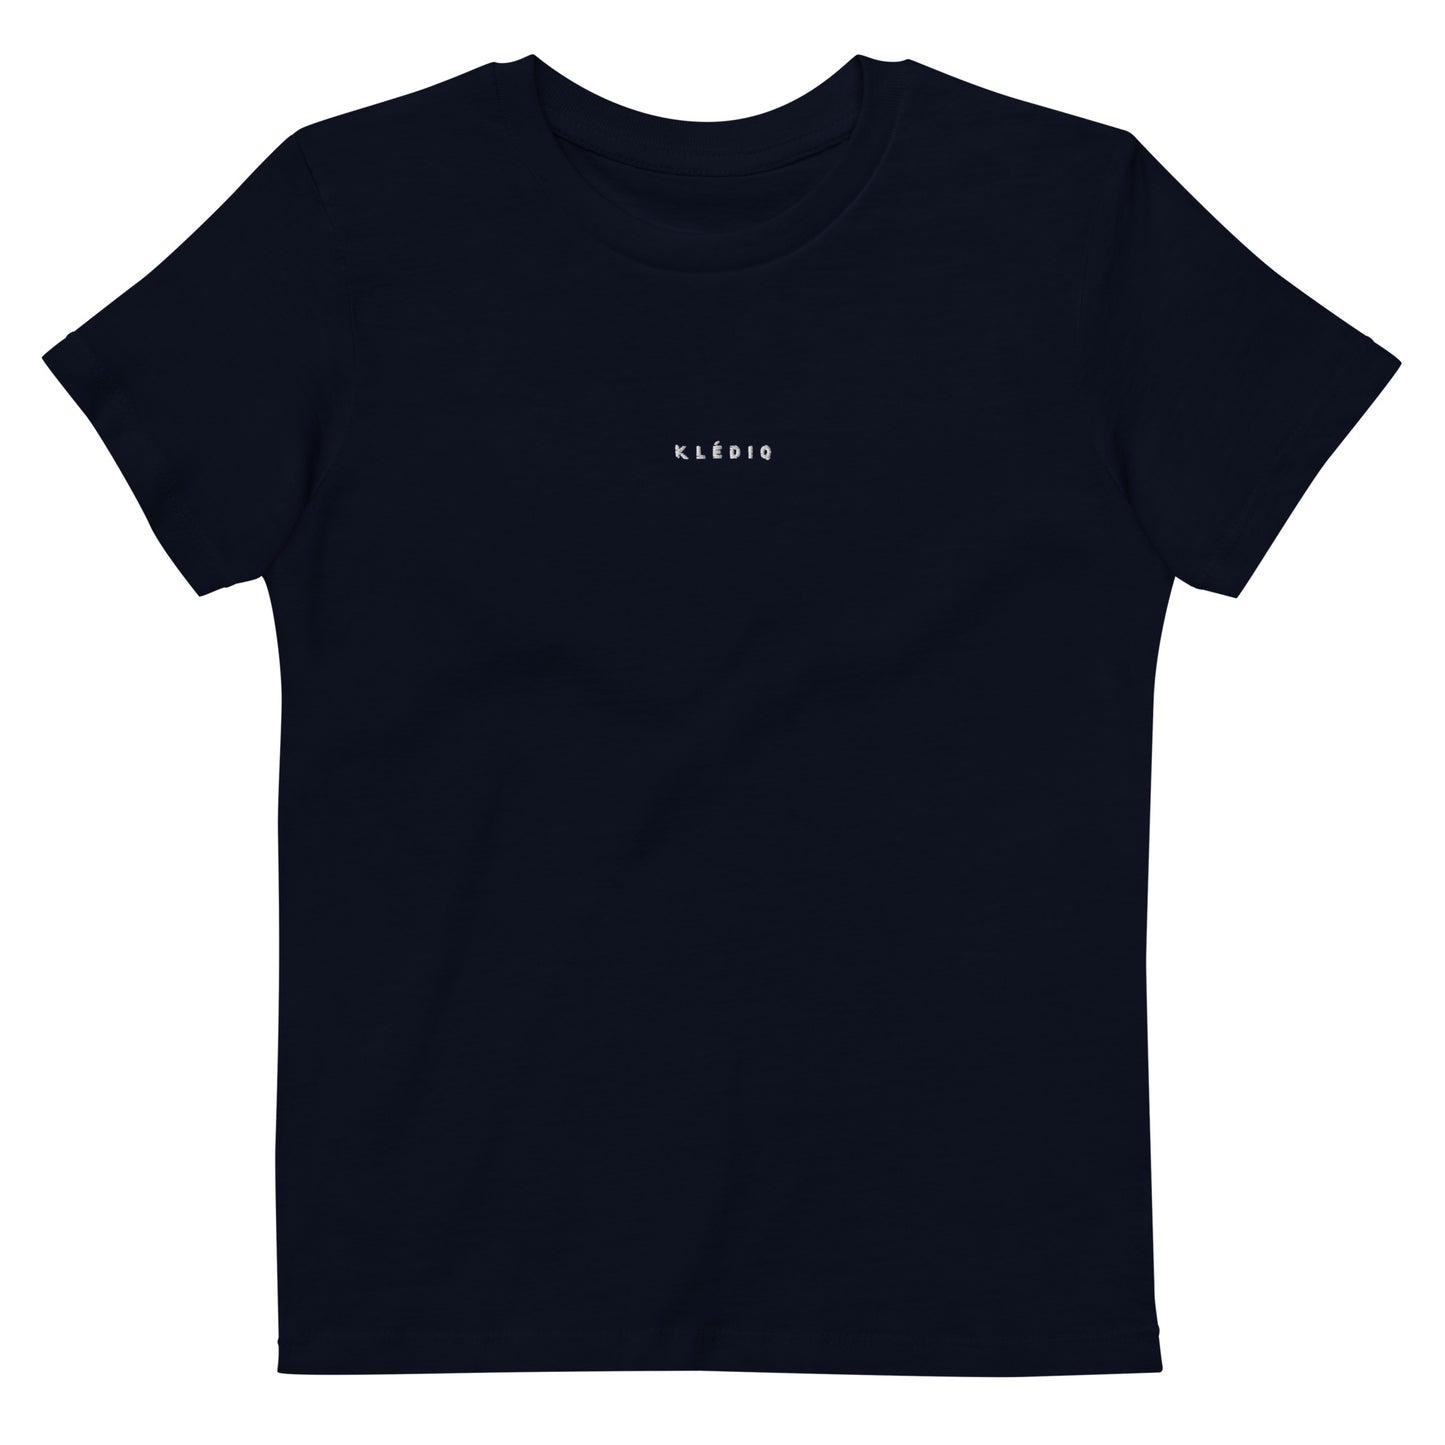 Klediq Kids T-shirt / Navy